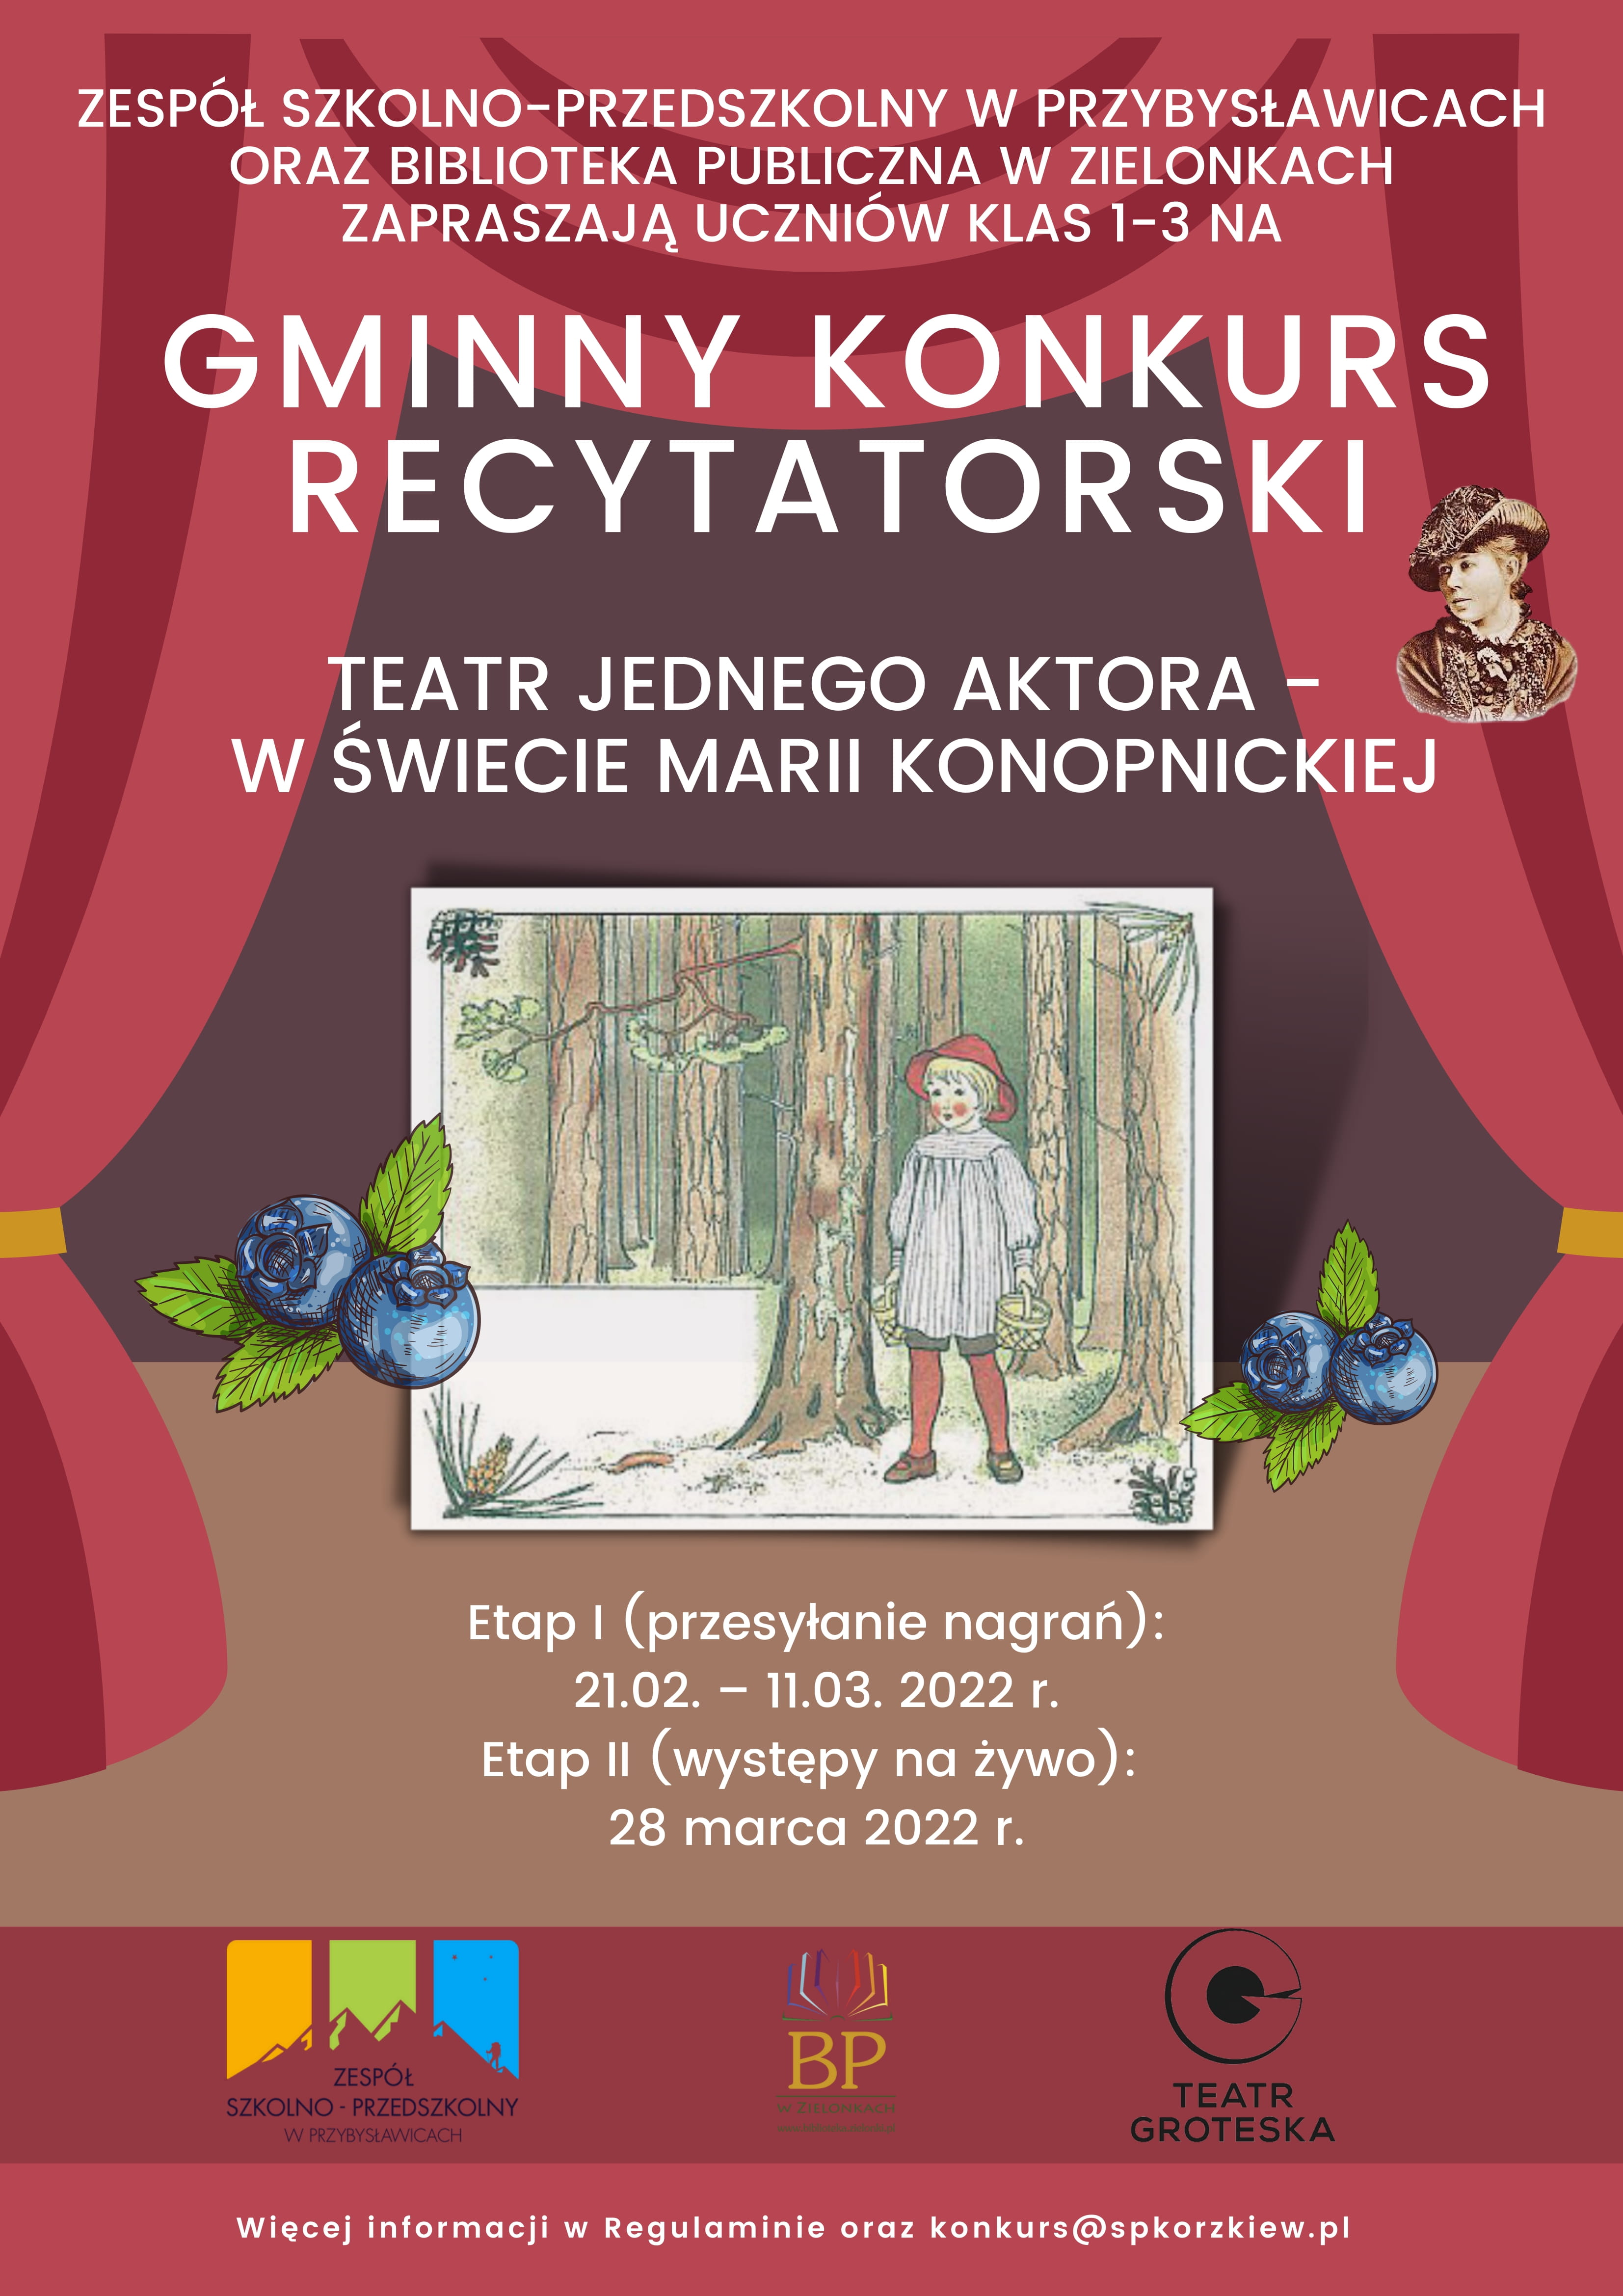 Plakat informacyjny utrzymany w tonacji czerwieni, przedstawia rozsuniętą kurtynę w środku obrazek dziewczynki w lesie z koszykami w dłoniach, plakat dotyczy Gminnego Konkursu Recytatorskiego, Teatr jednego aktora - w świecie Marii Konopnickiej